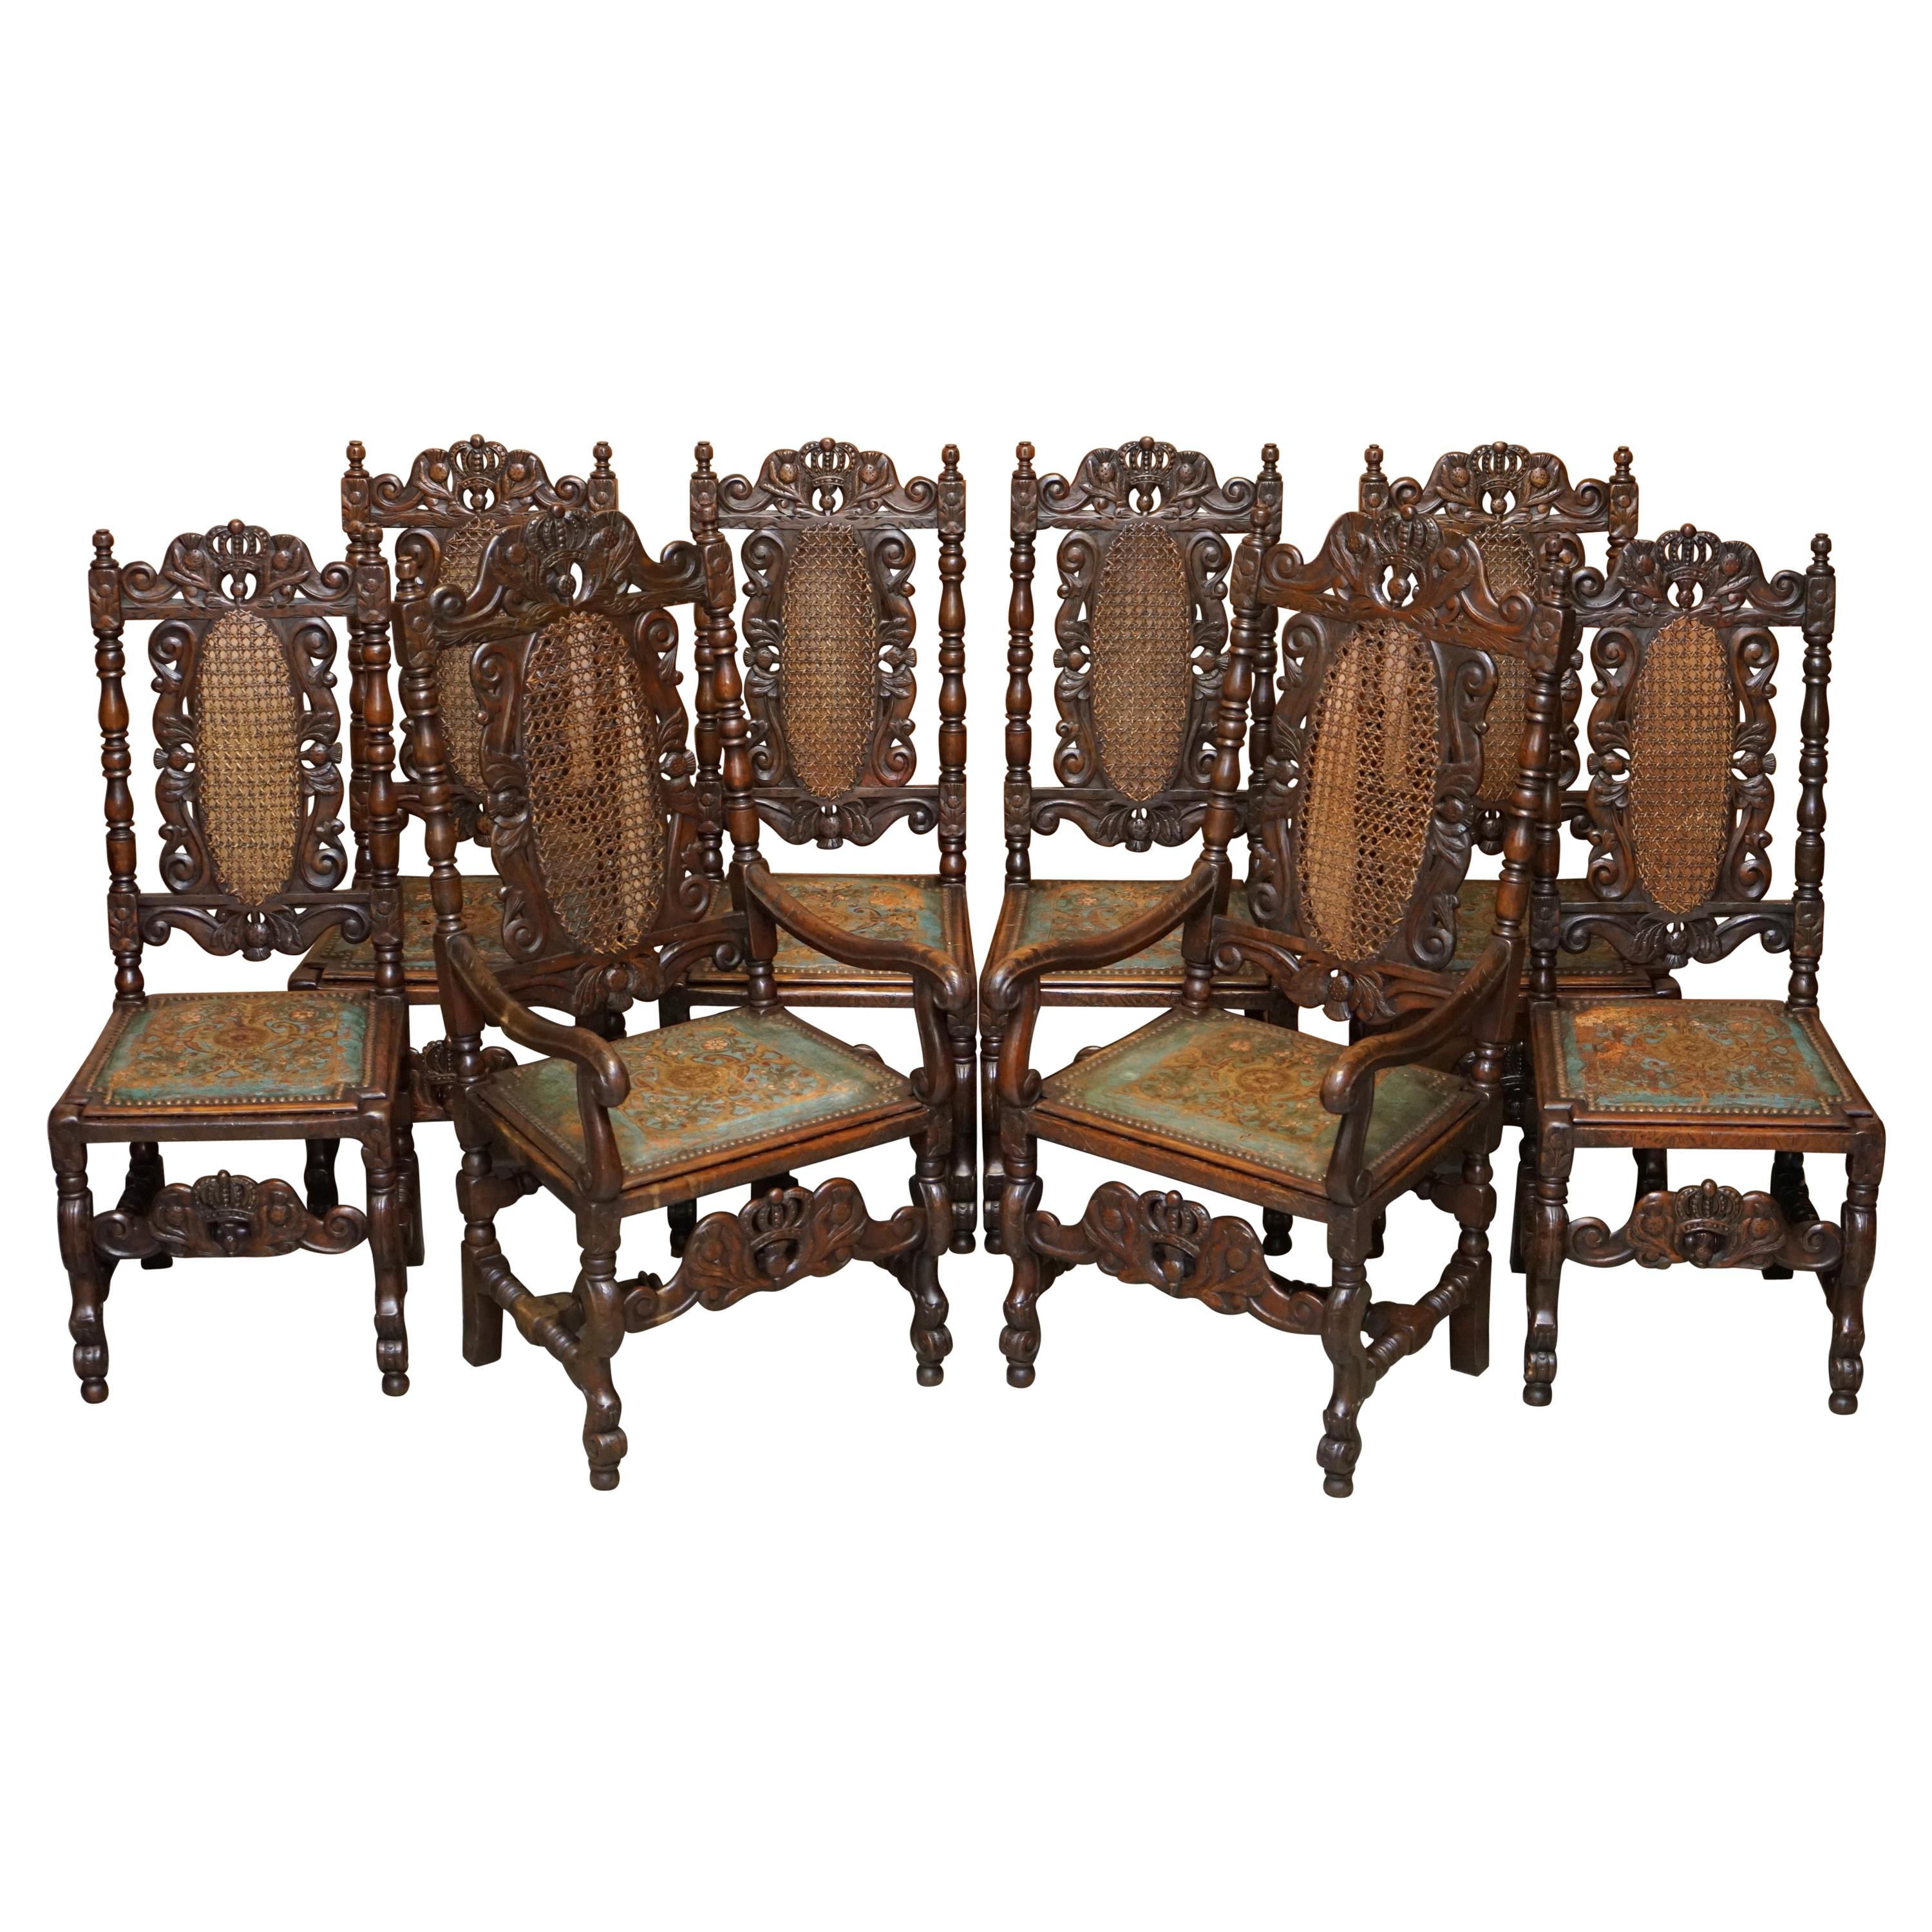 Huit chaises de salle à manger à trône Jacobean sculptées, peintes à la main et sièges en cuir gaufré